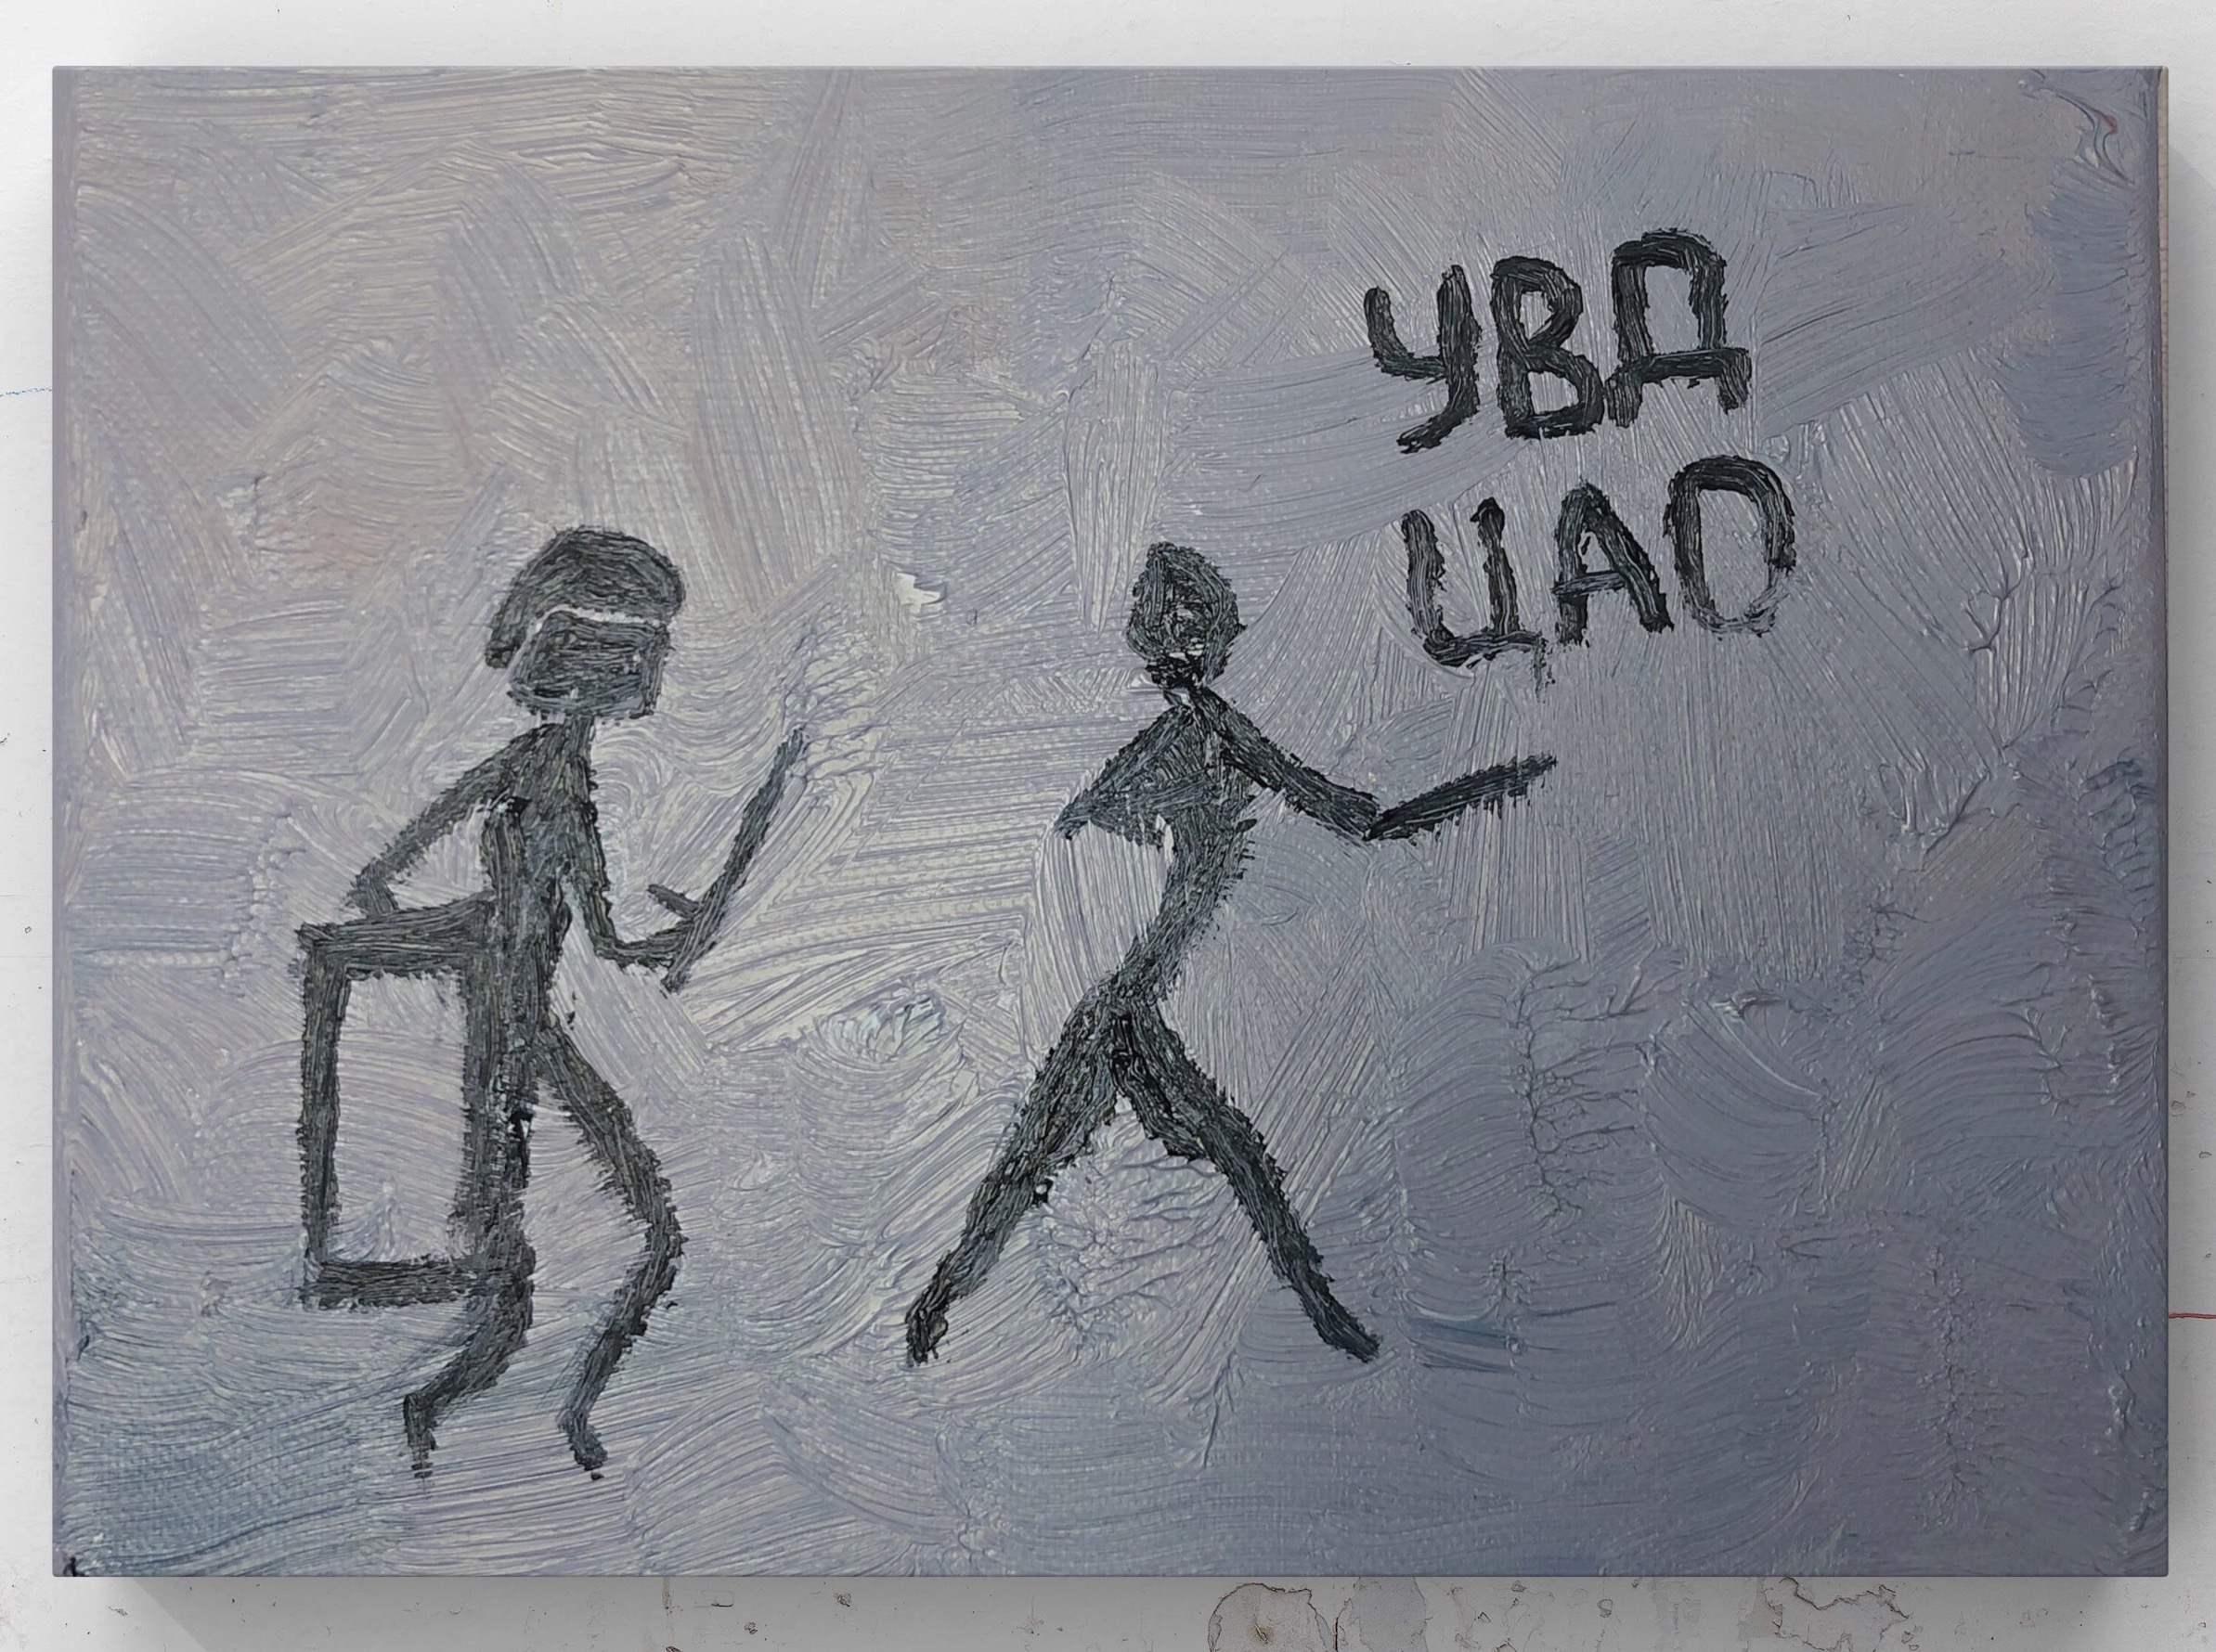 Картина современного российского художника Colonel Royce (Василий Круглов) в стиле концептуализм, поп-арт, минимализм. Цвета: серый, чёрный. Сюжет: наскальные рисунки, полицейское государство, ОМОН, протесты, наивизм. Можно купить